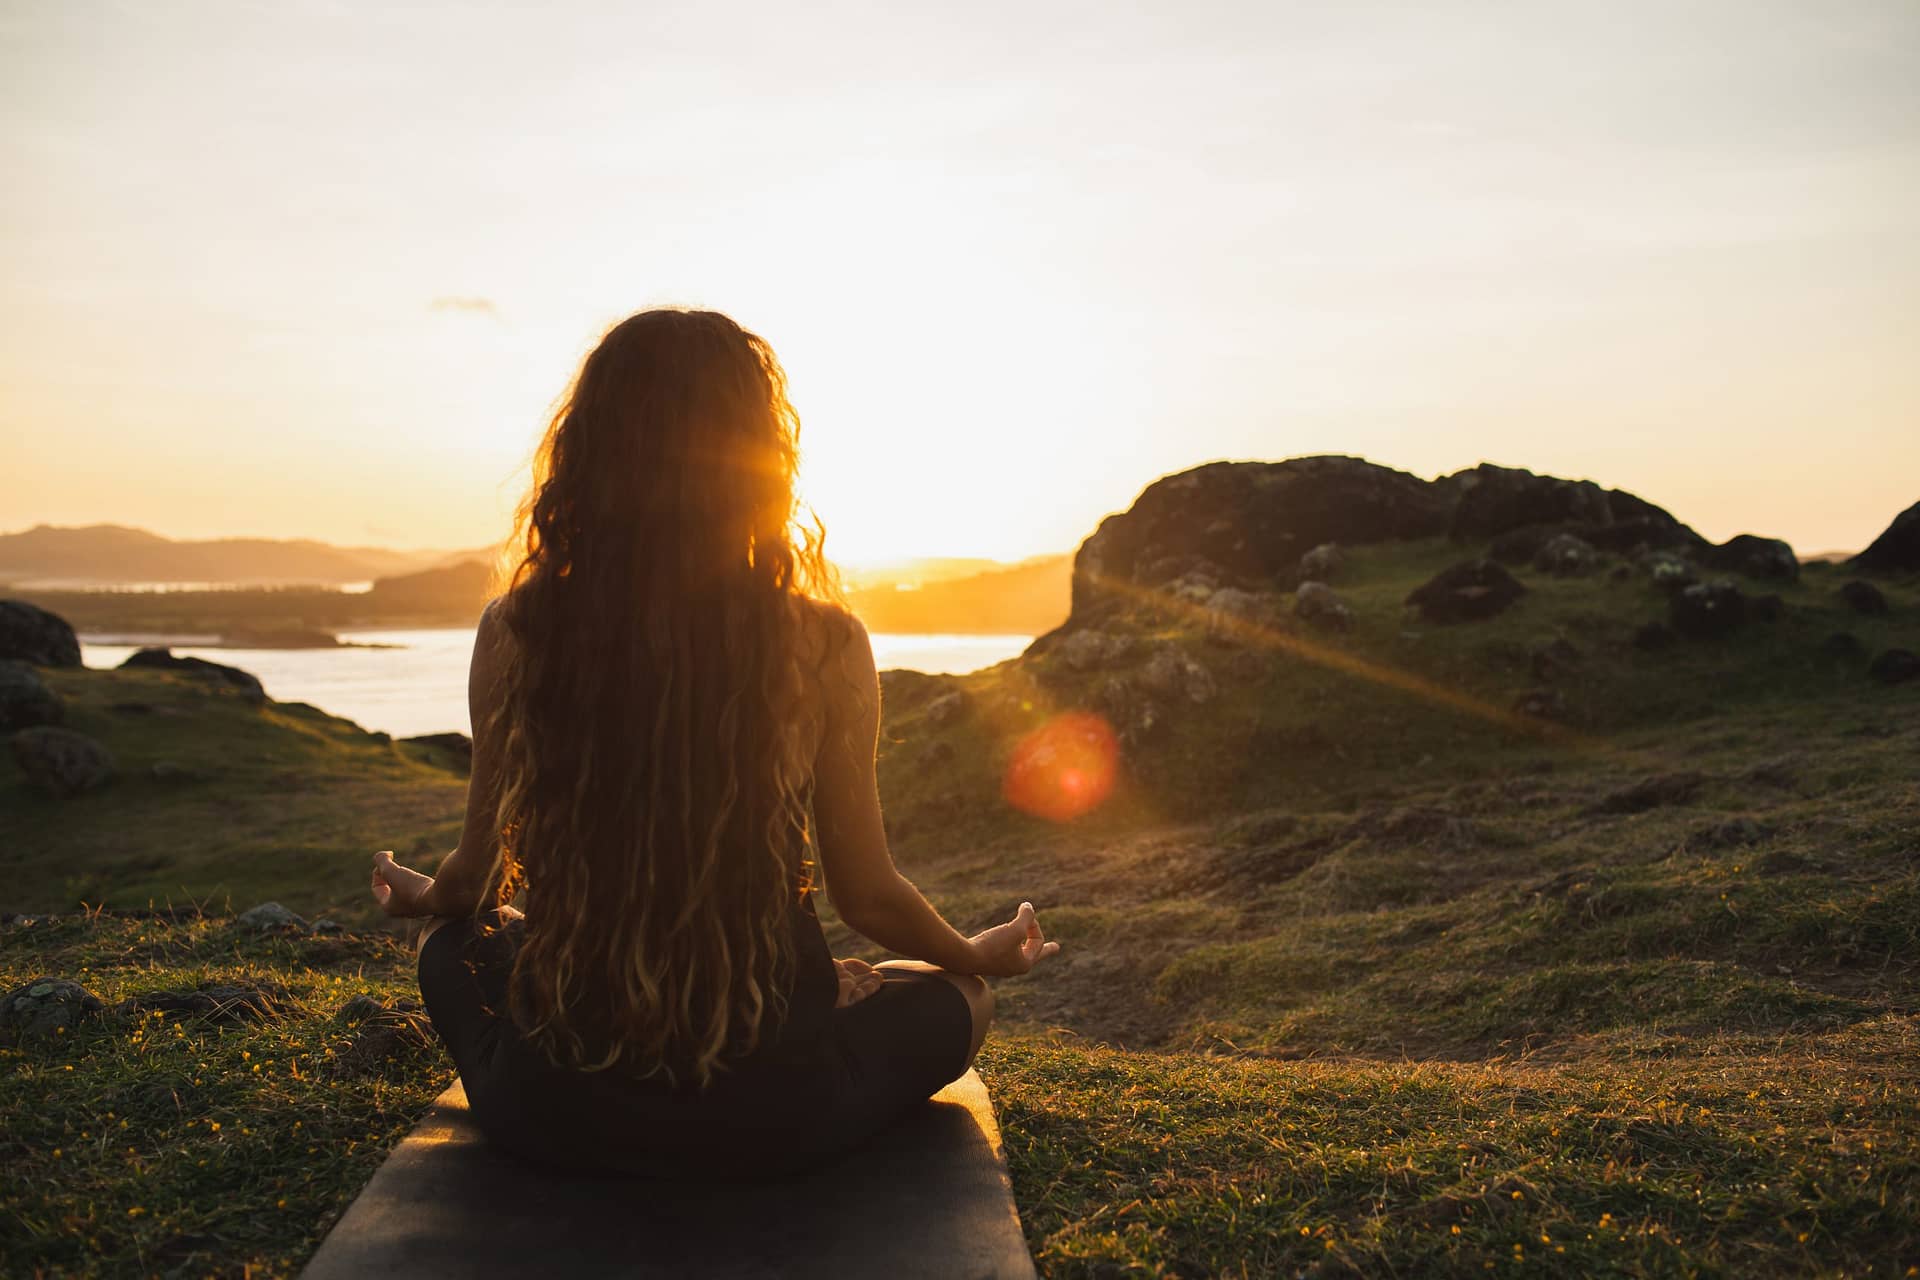 woman meditating yoga alone at sunrise mountains 2021 12 09 08 24 09 utc scaled